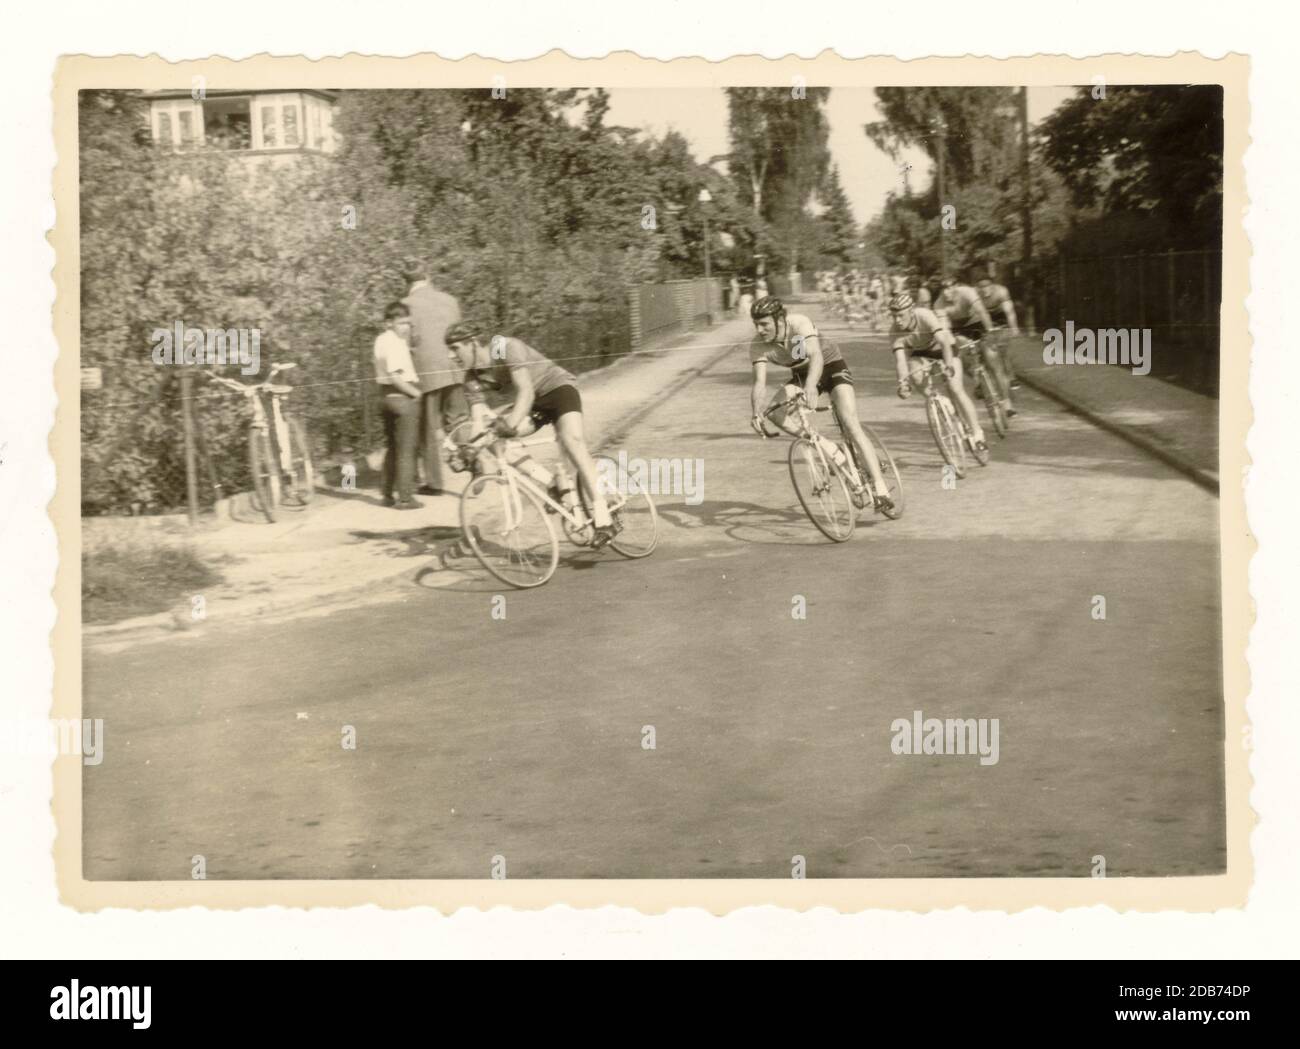 Original Vintage Cycling Mid Century Foto, Amateurfotografie, gebördelte Muschelrand, Radrennen, Lichter Felde auf Rückseite geschrieben, datiert 1961, wahrscheinlich deutsch, Europa. Stockfoto